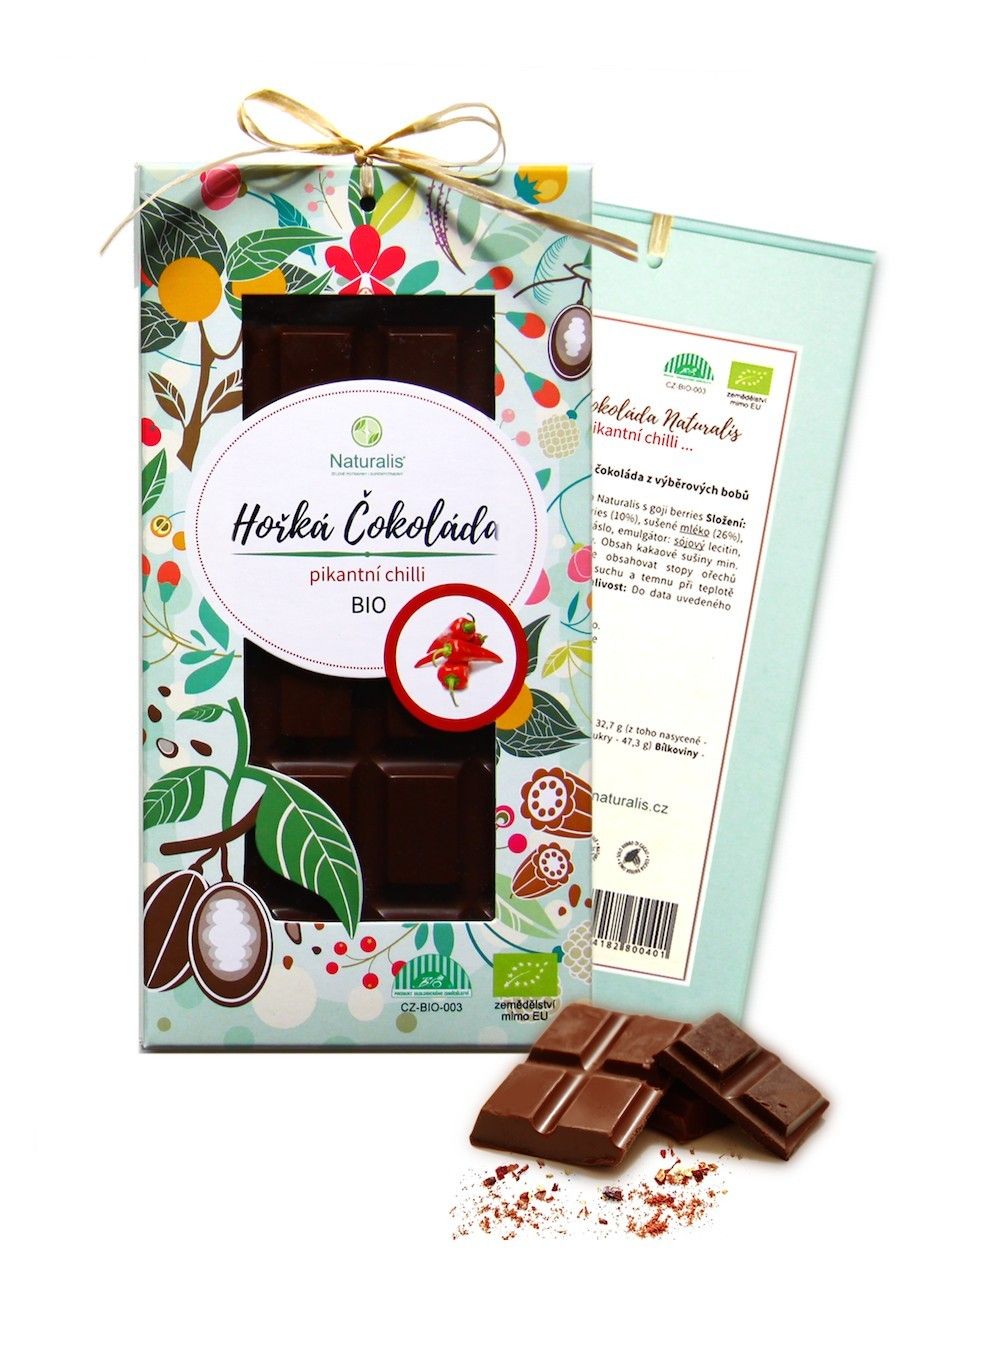 Naturalis BIO Čokoláda Naturalis s chilli - 80g + prodloužená záruka na vrácení zboží do 100 dnů